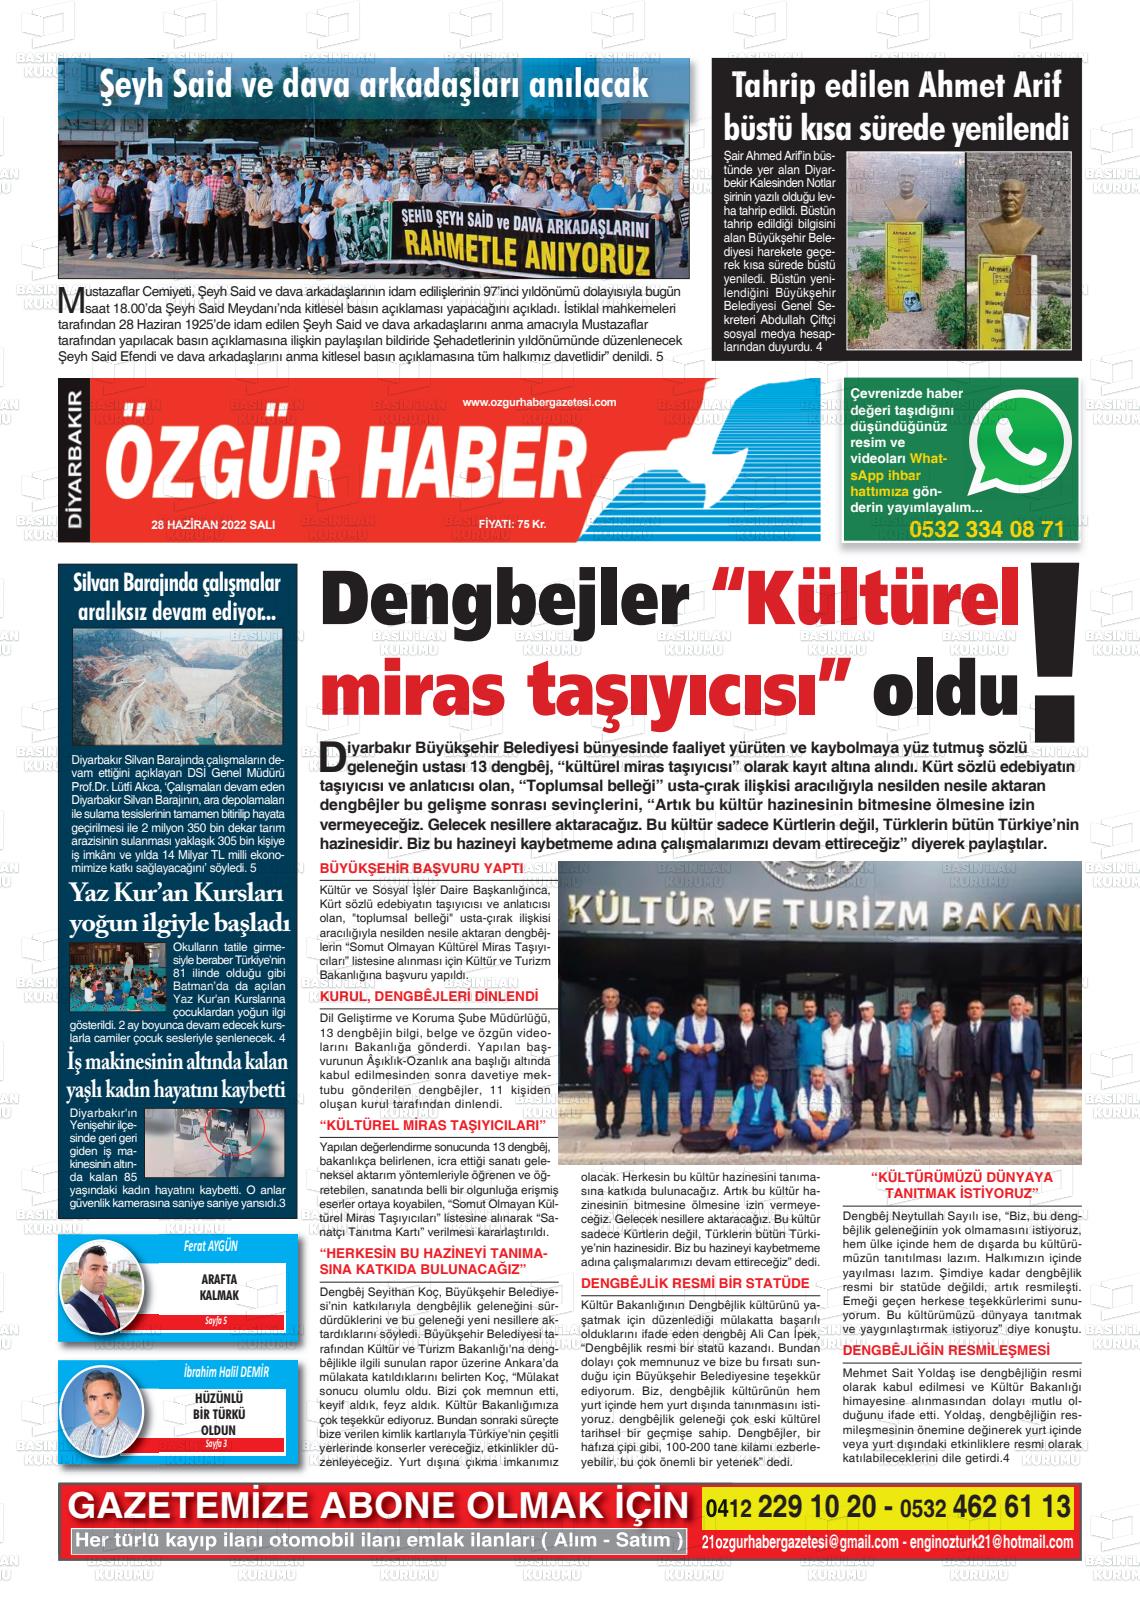 28 Haziran 2022 Özgür Haber Gazete Manşeti